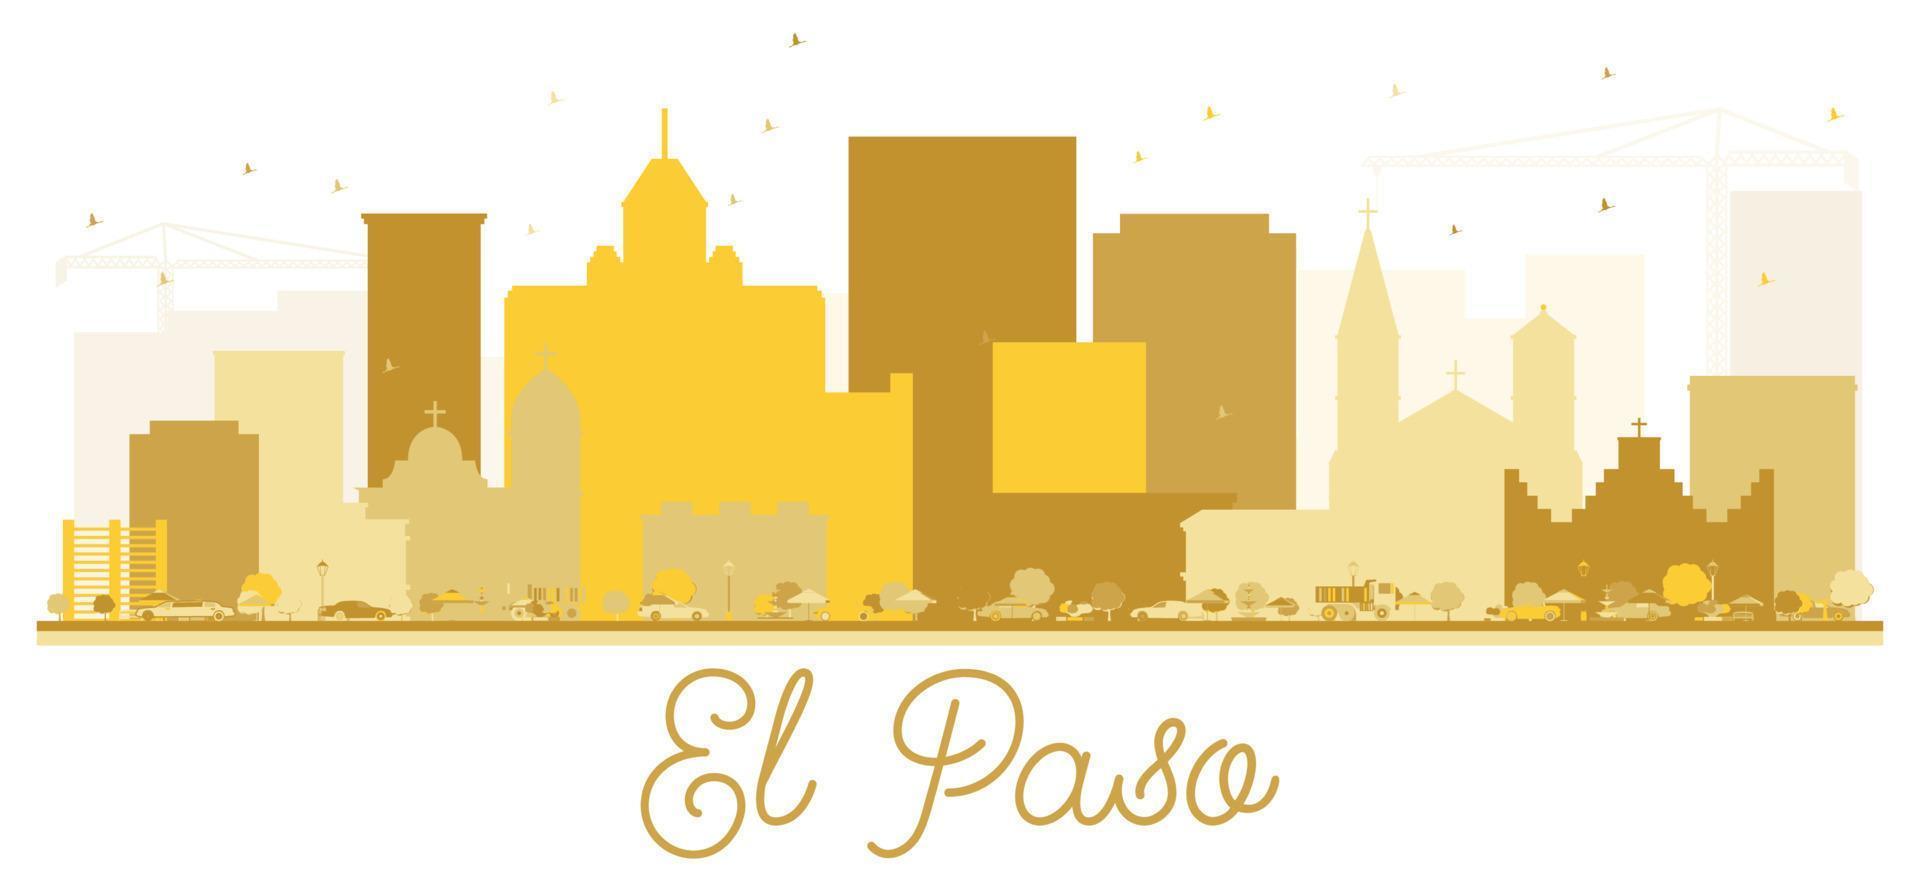 El Paso Texas USA City skyline Golden silhouette. vector